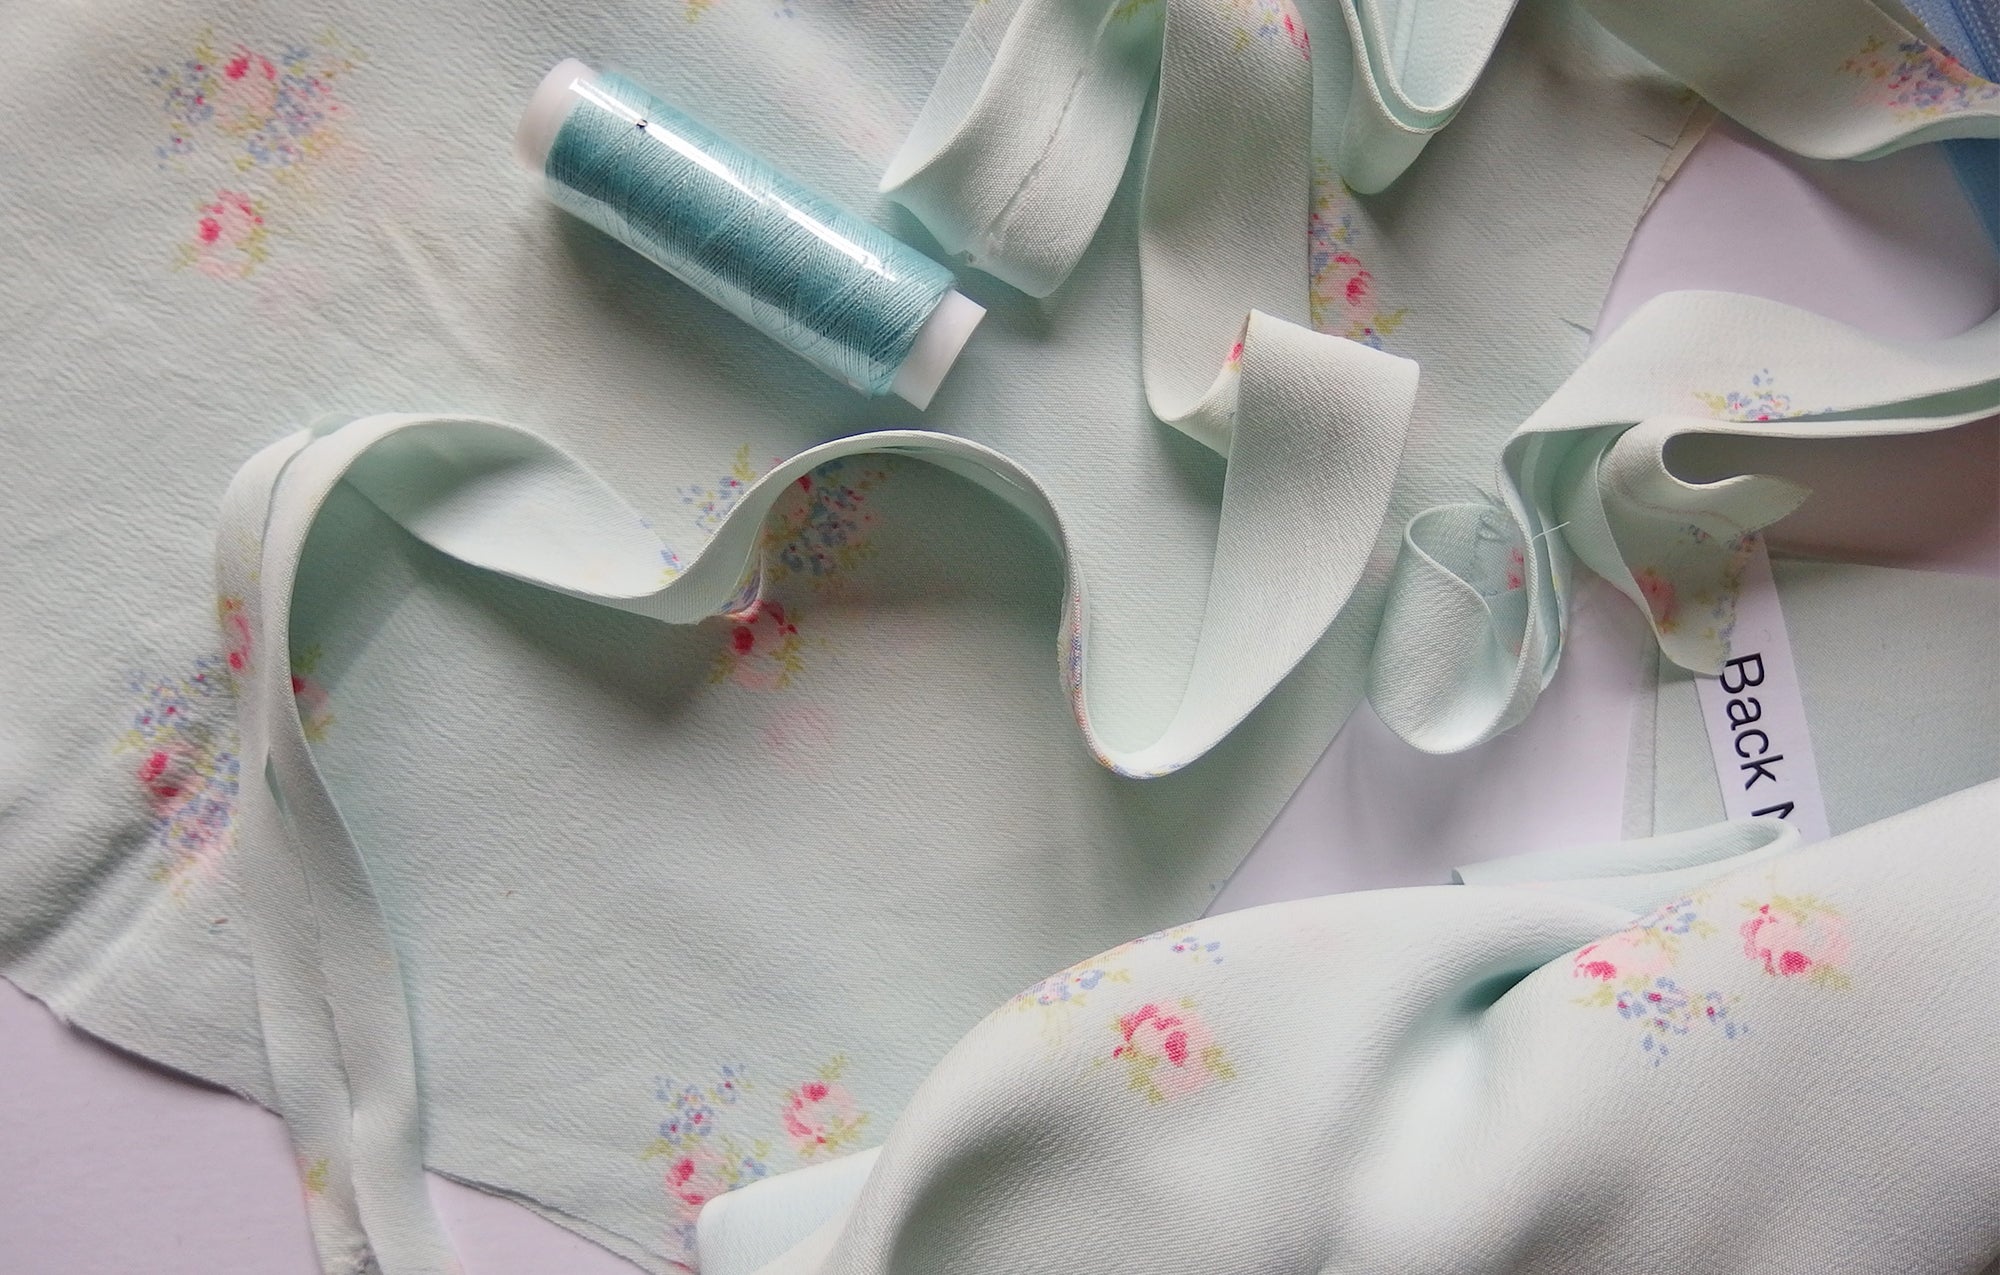 Vintage Dress-making Kit: Floral Dress